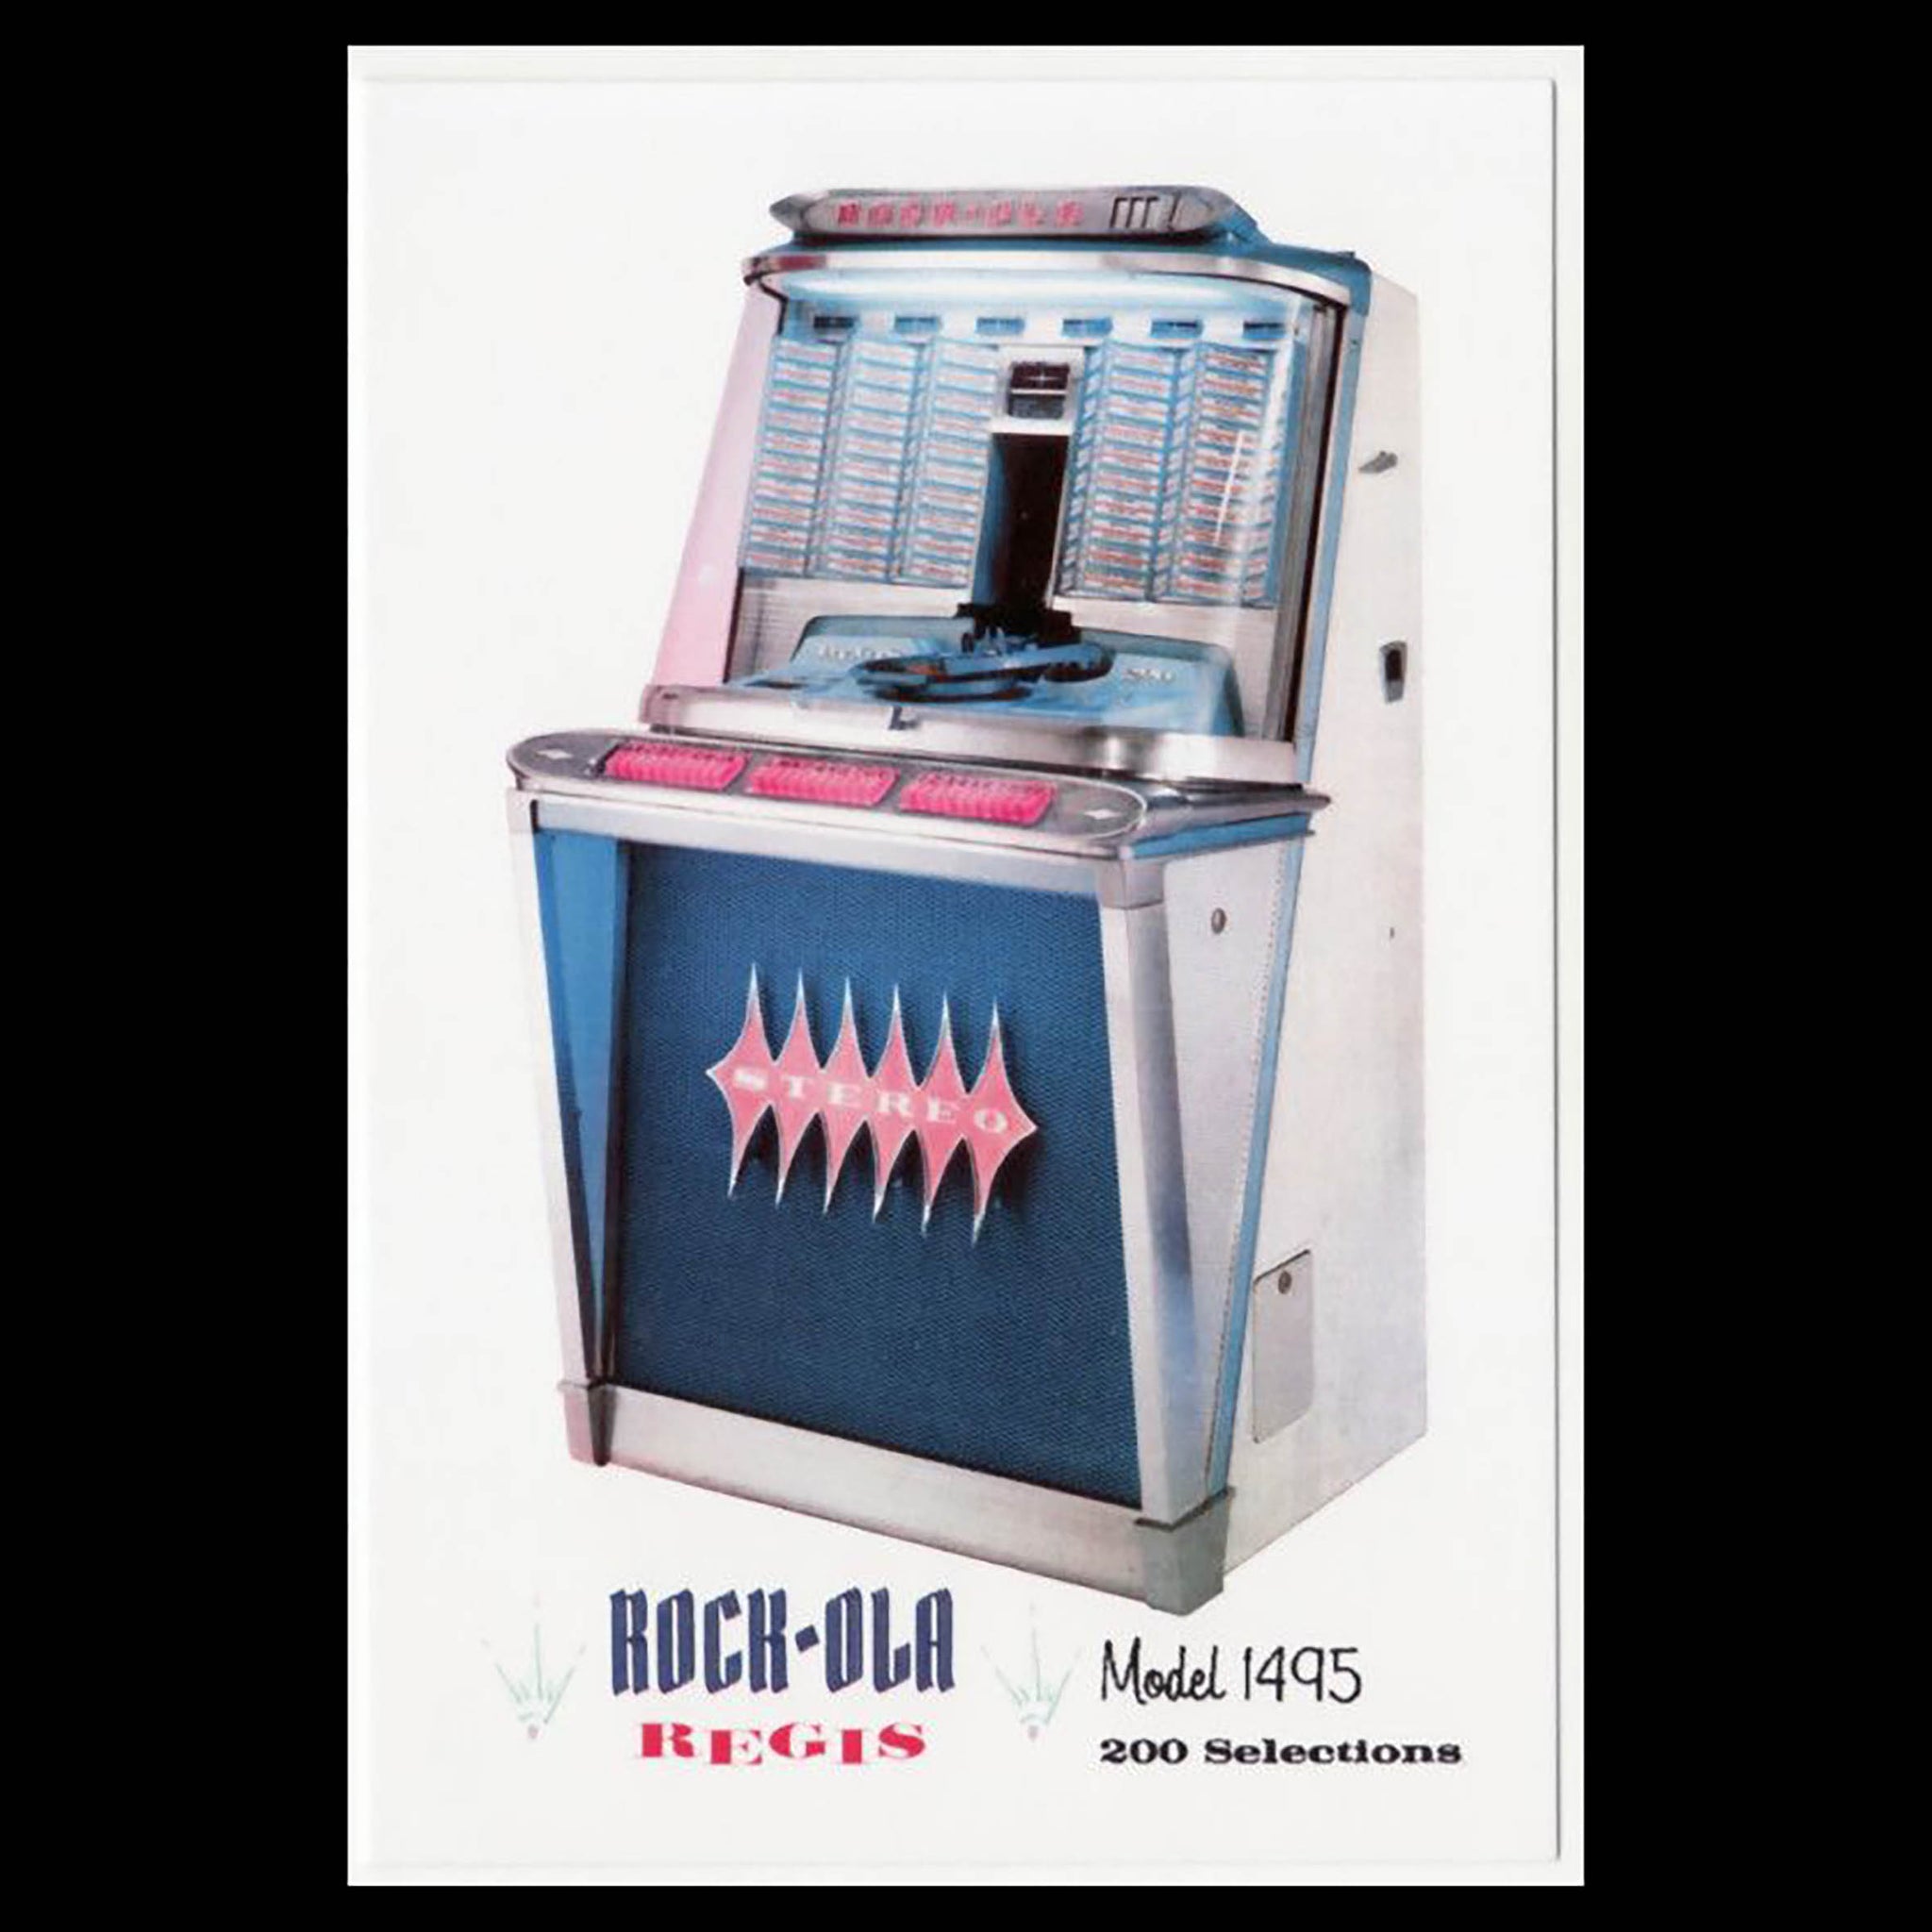 1961 Rock-Ola Regis 200 selection Jukebox - Coming soon